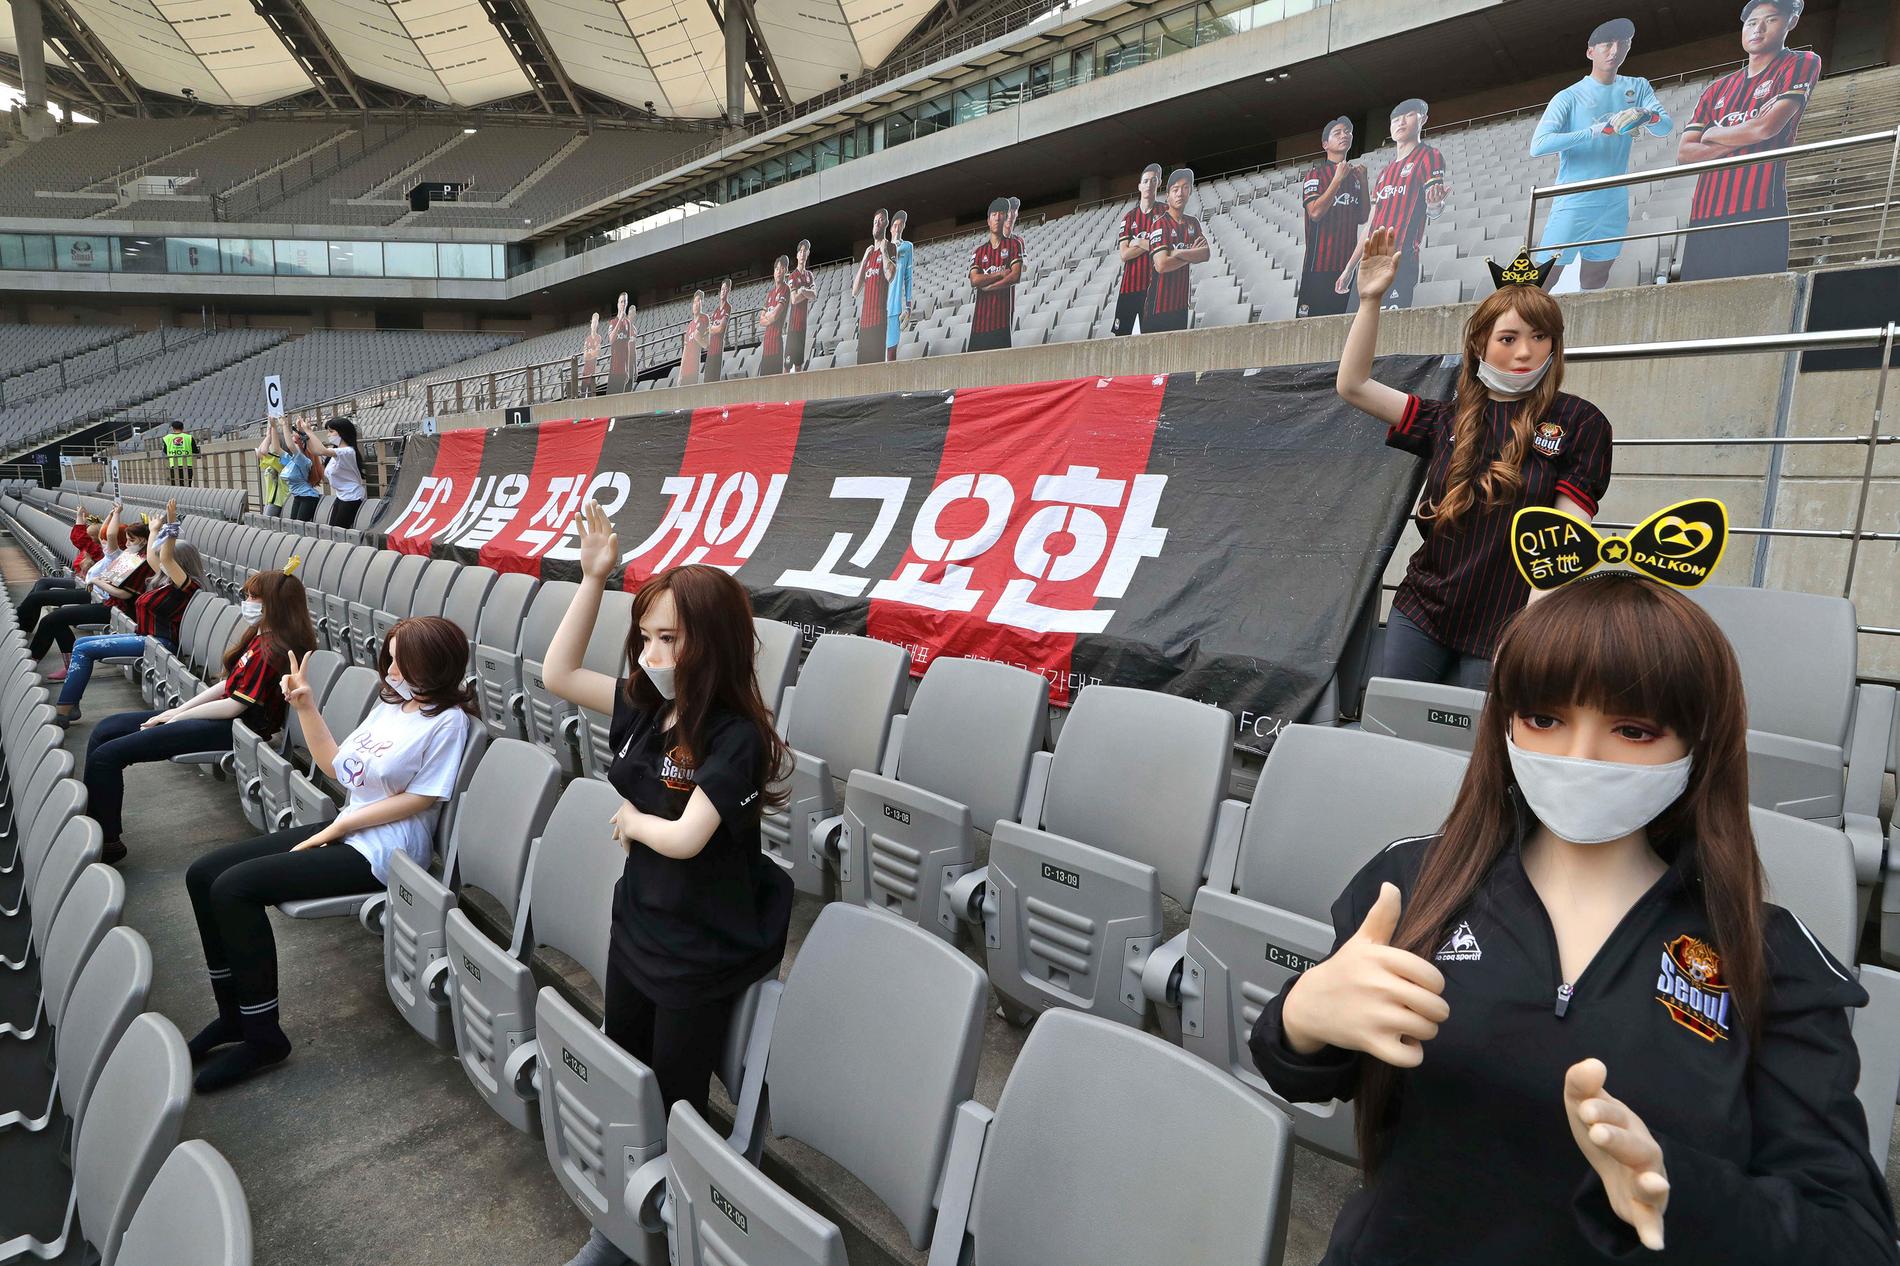 Vissa av dockorna som placerades ut under FC Seouls match mot Gwangju bar t-shirtar eller skyltar med namnet på ett företag som säljer sexleksaker.